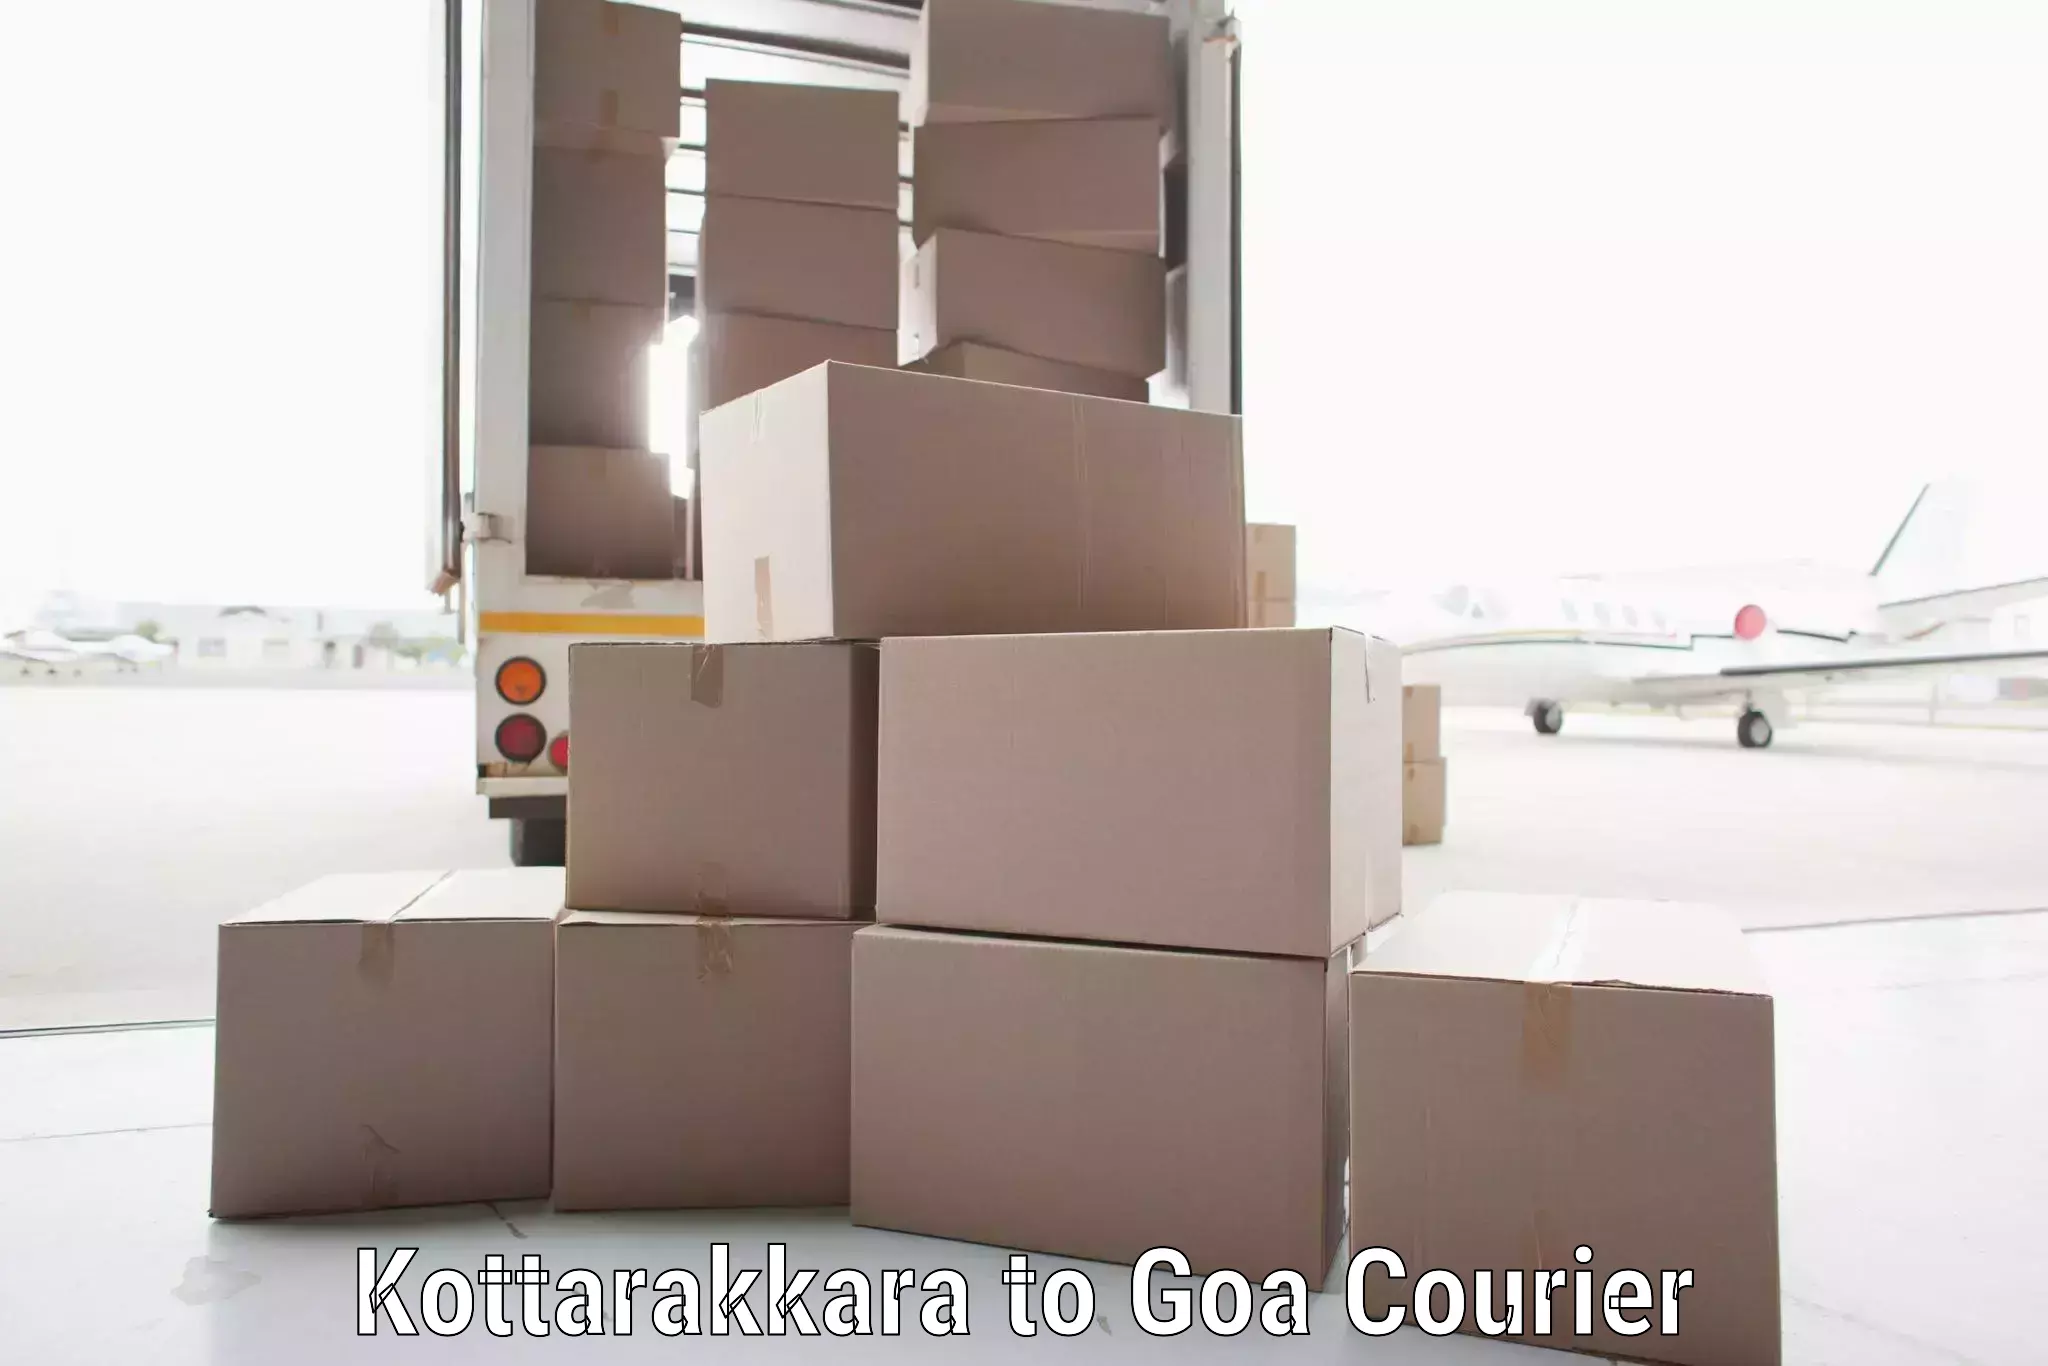 Comprehensive shipping services Kottarakkara to Canacona